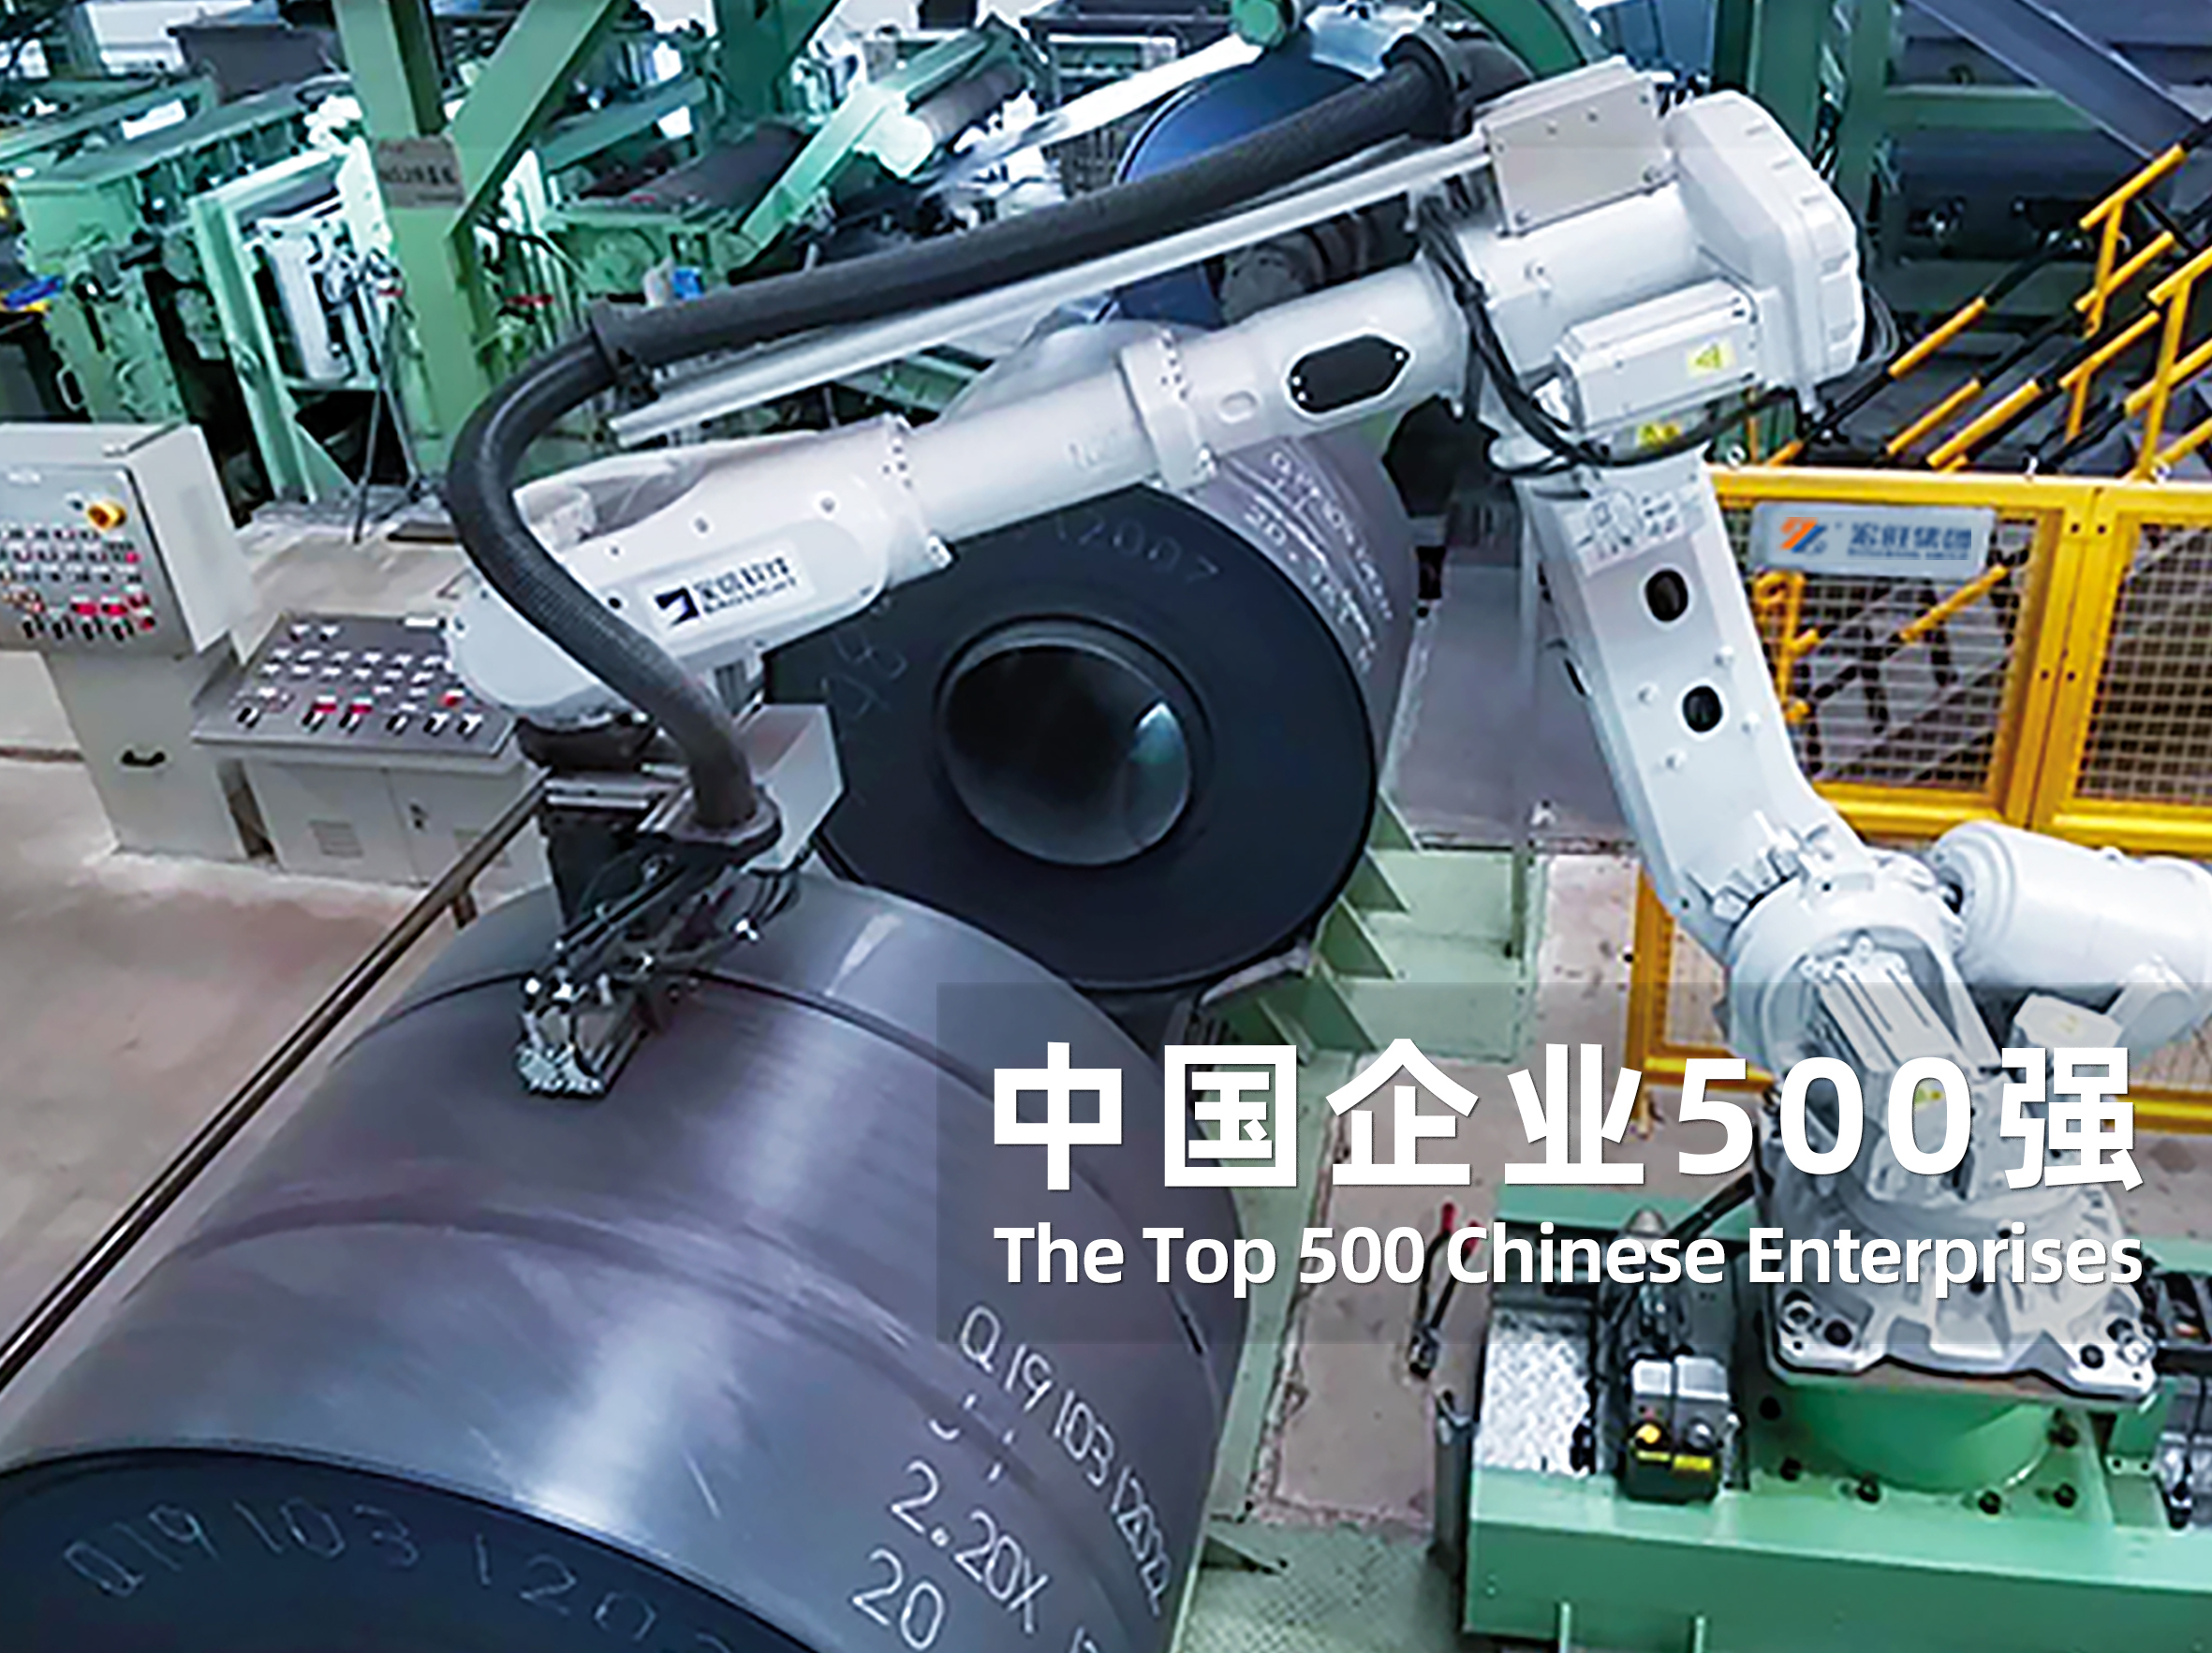 宏旺集团首次进入中国企业500强榜单